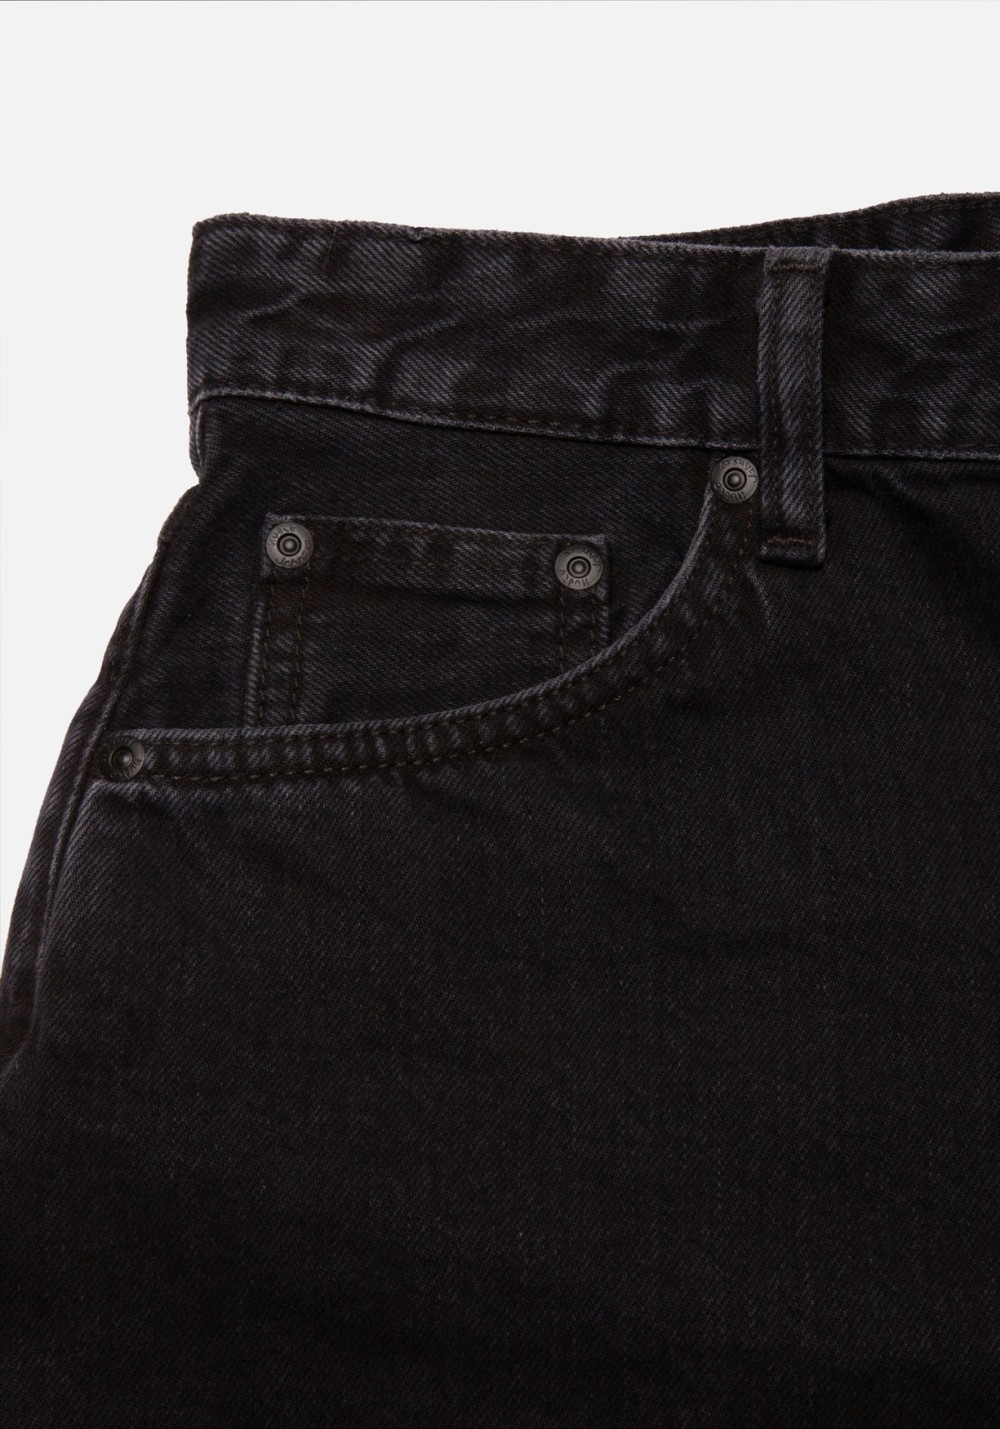 Jeans-Shorts Maeve Denim Shorts Smooth Black